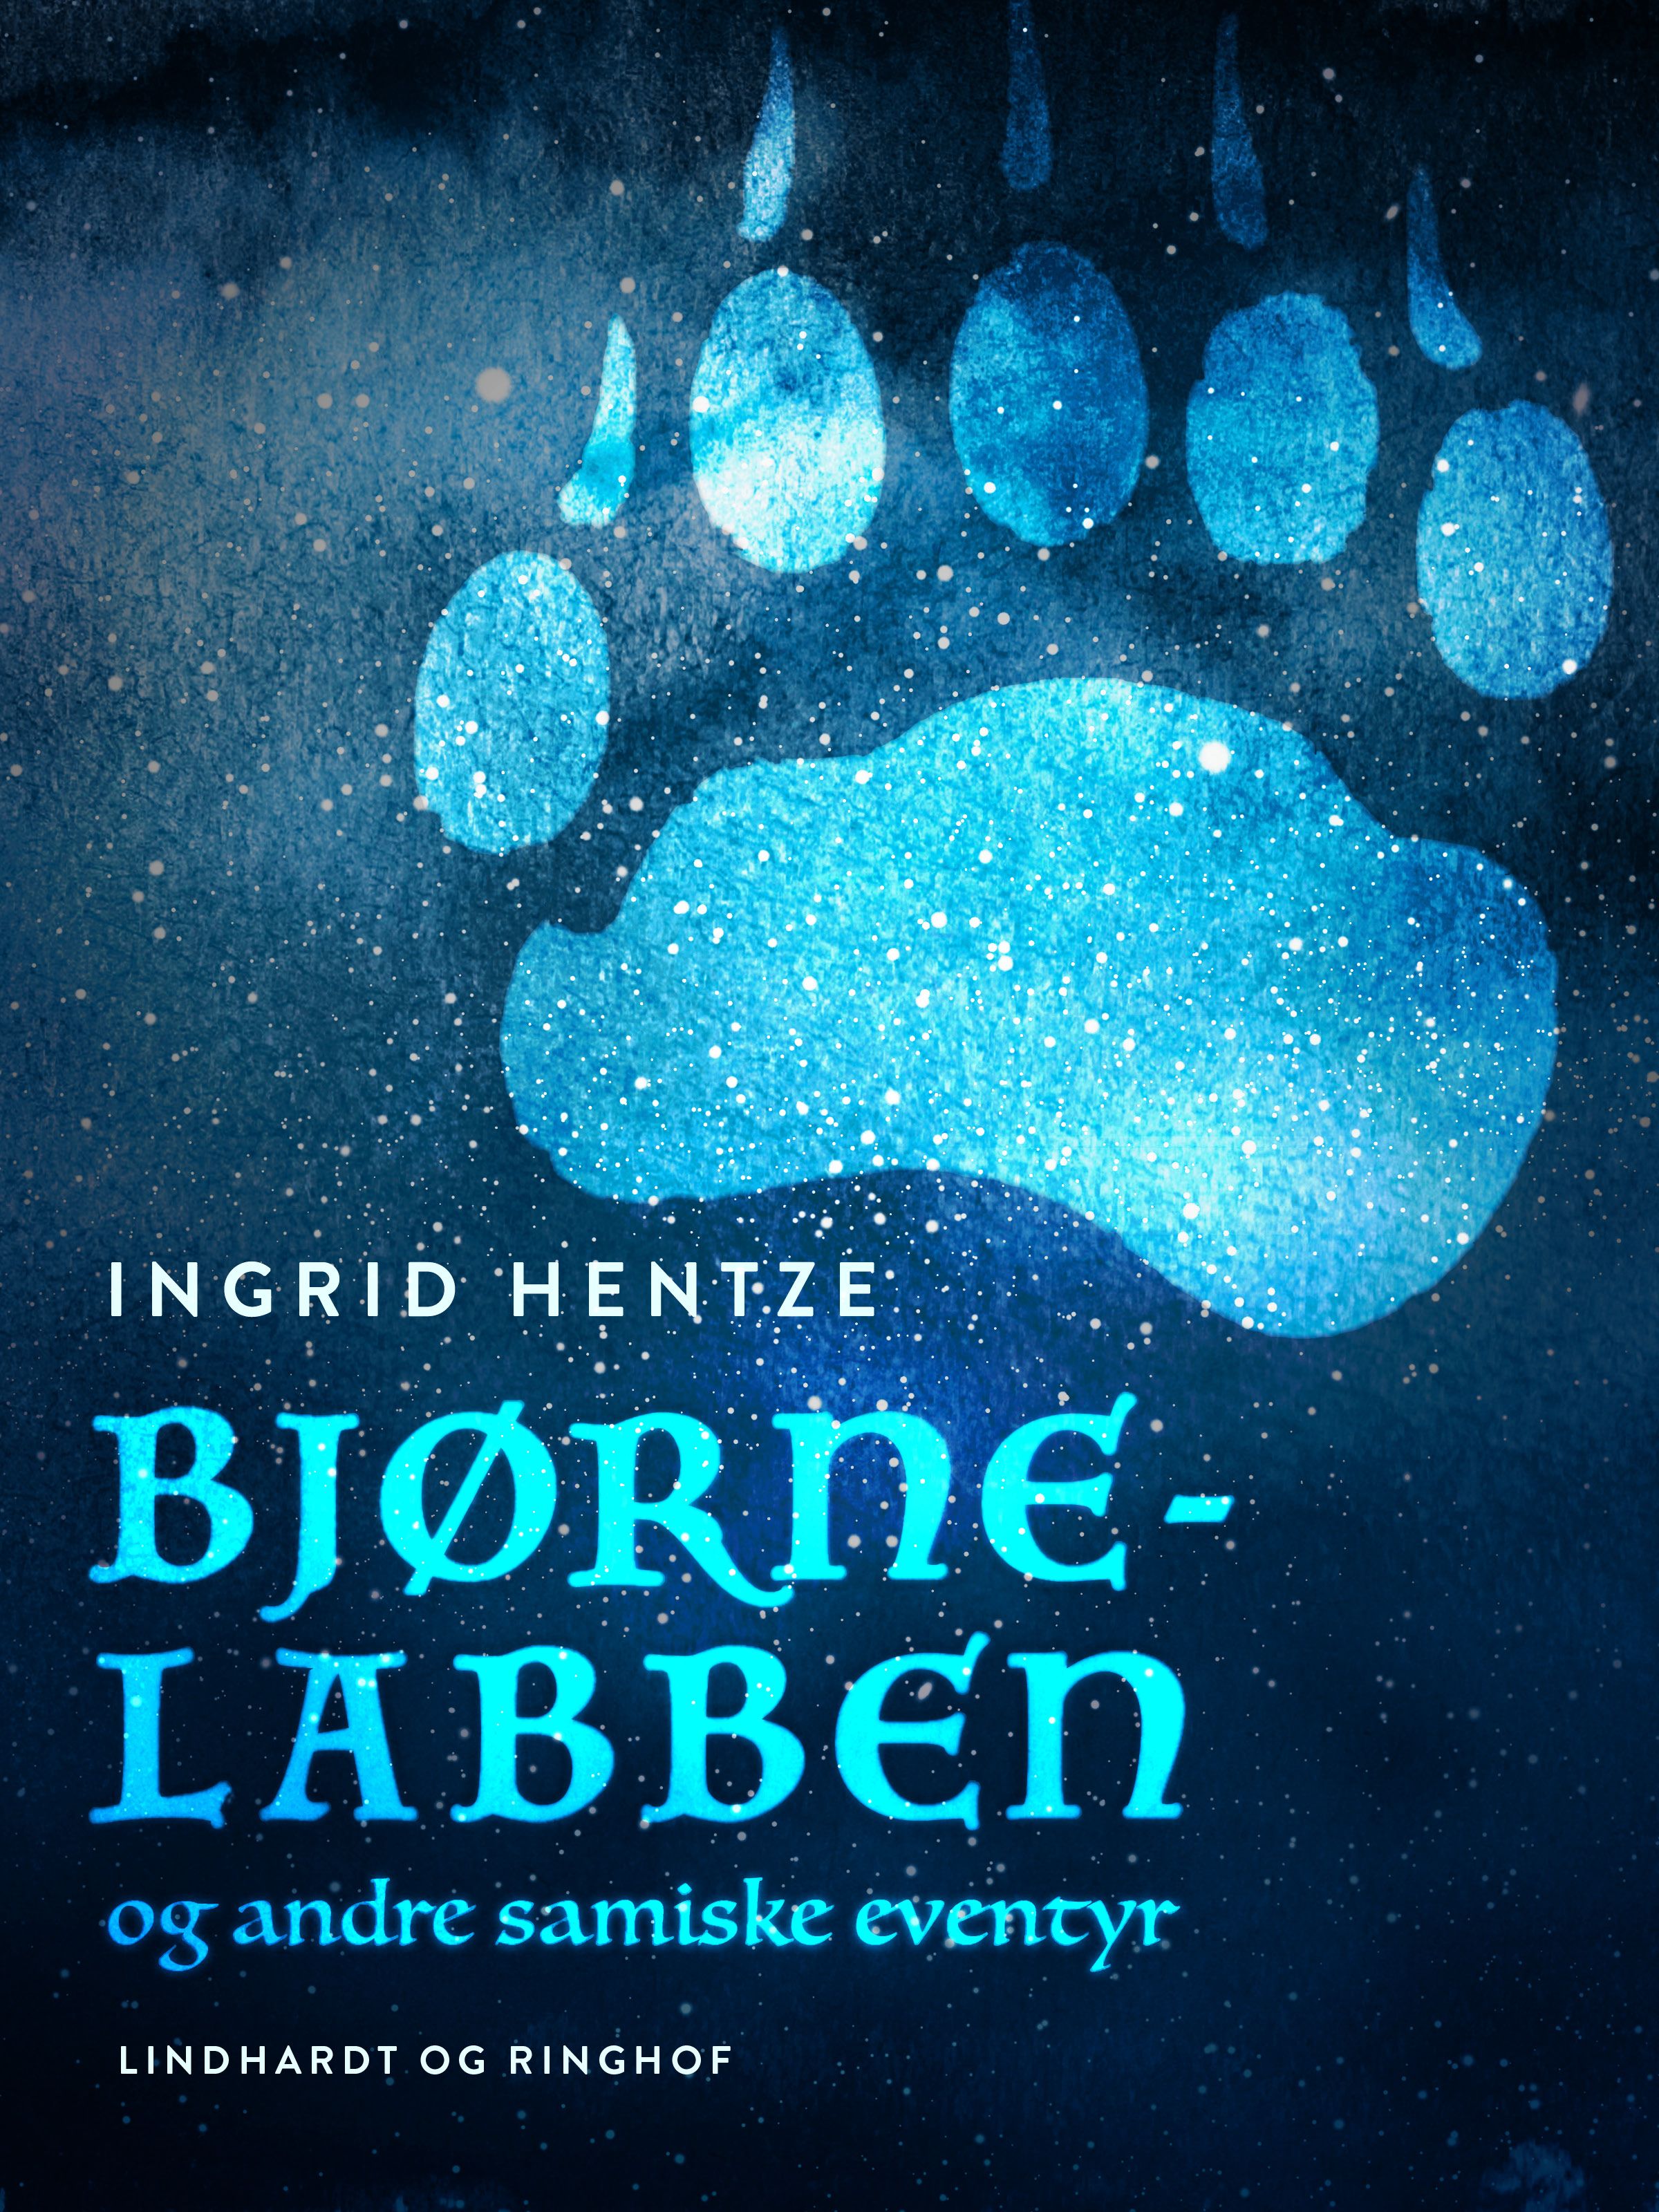 Bjørne-labben og andre samiske eventyr, e-bog af Ingrid Hentze